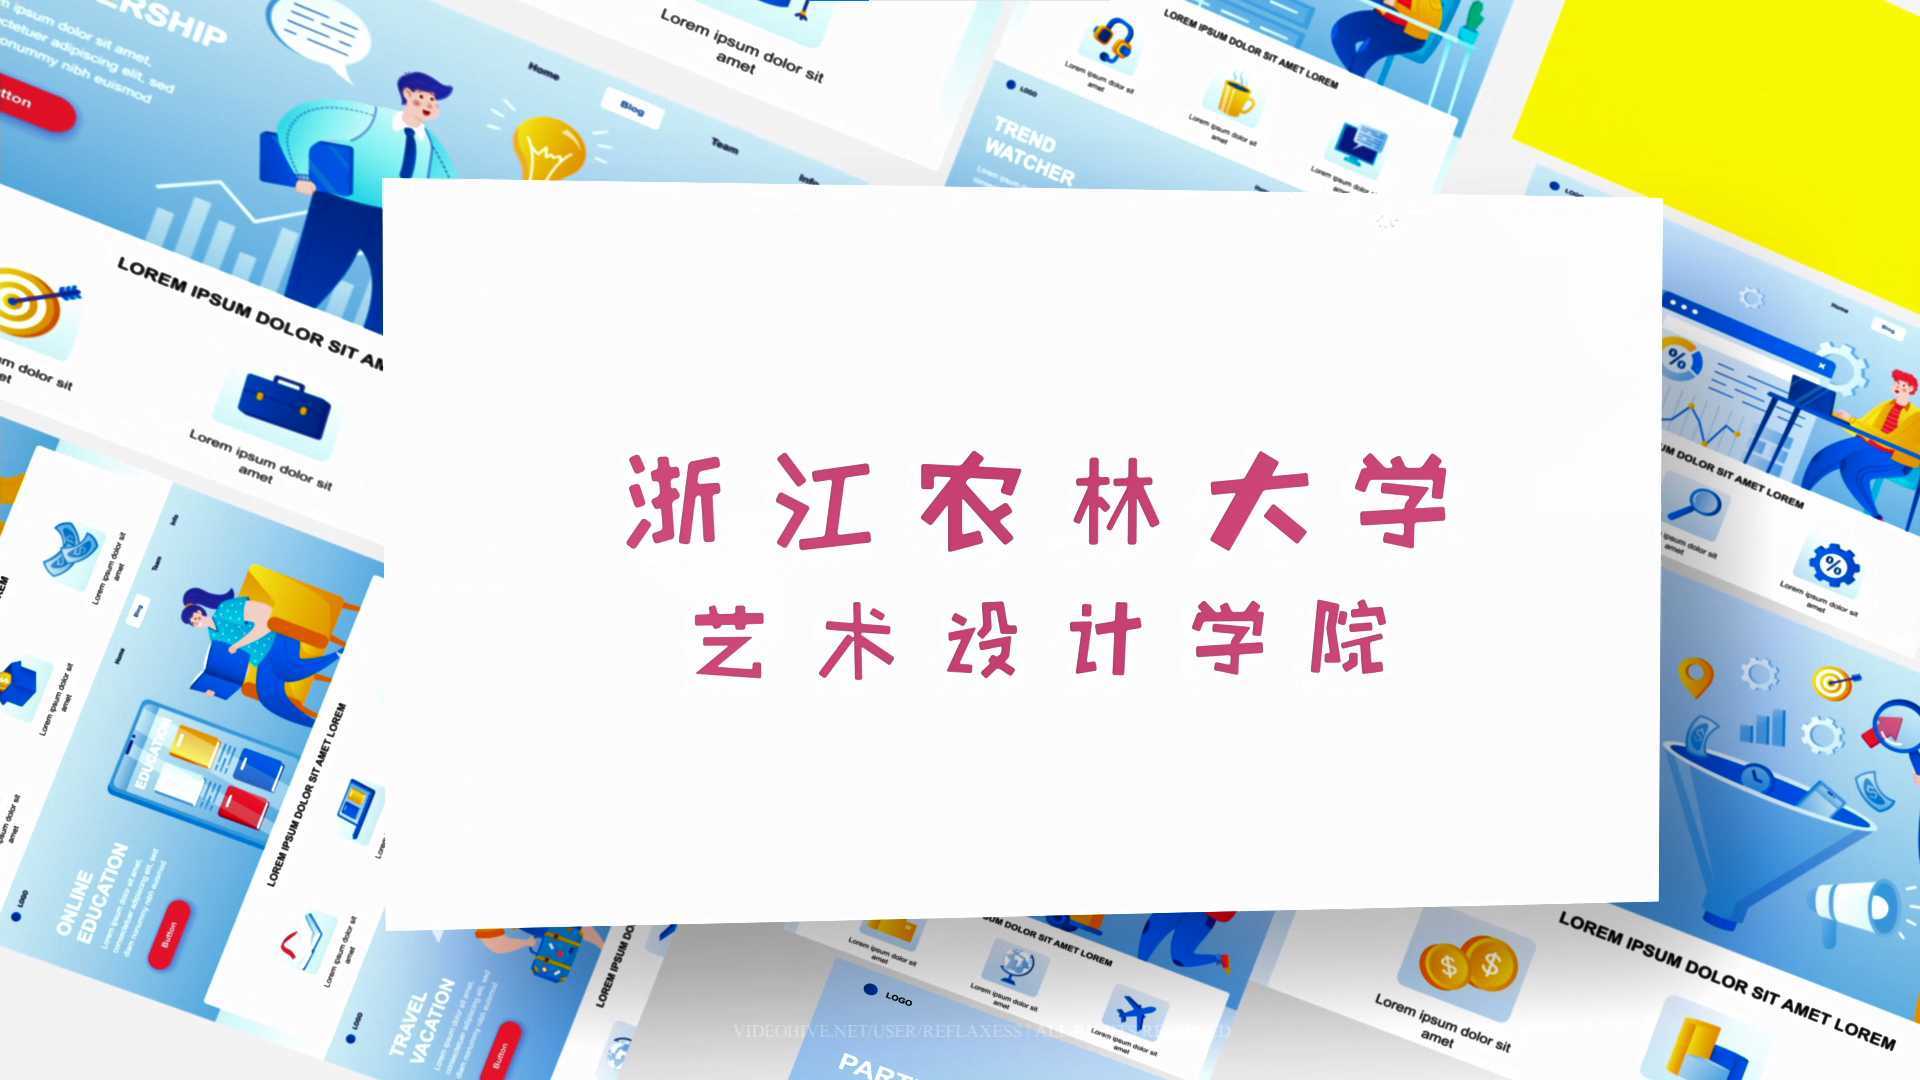 浙江农林大学-数字媒体艺术专业宣传片